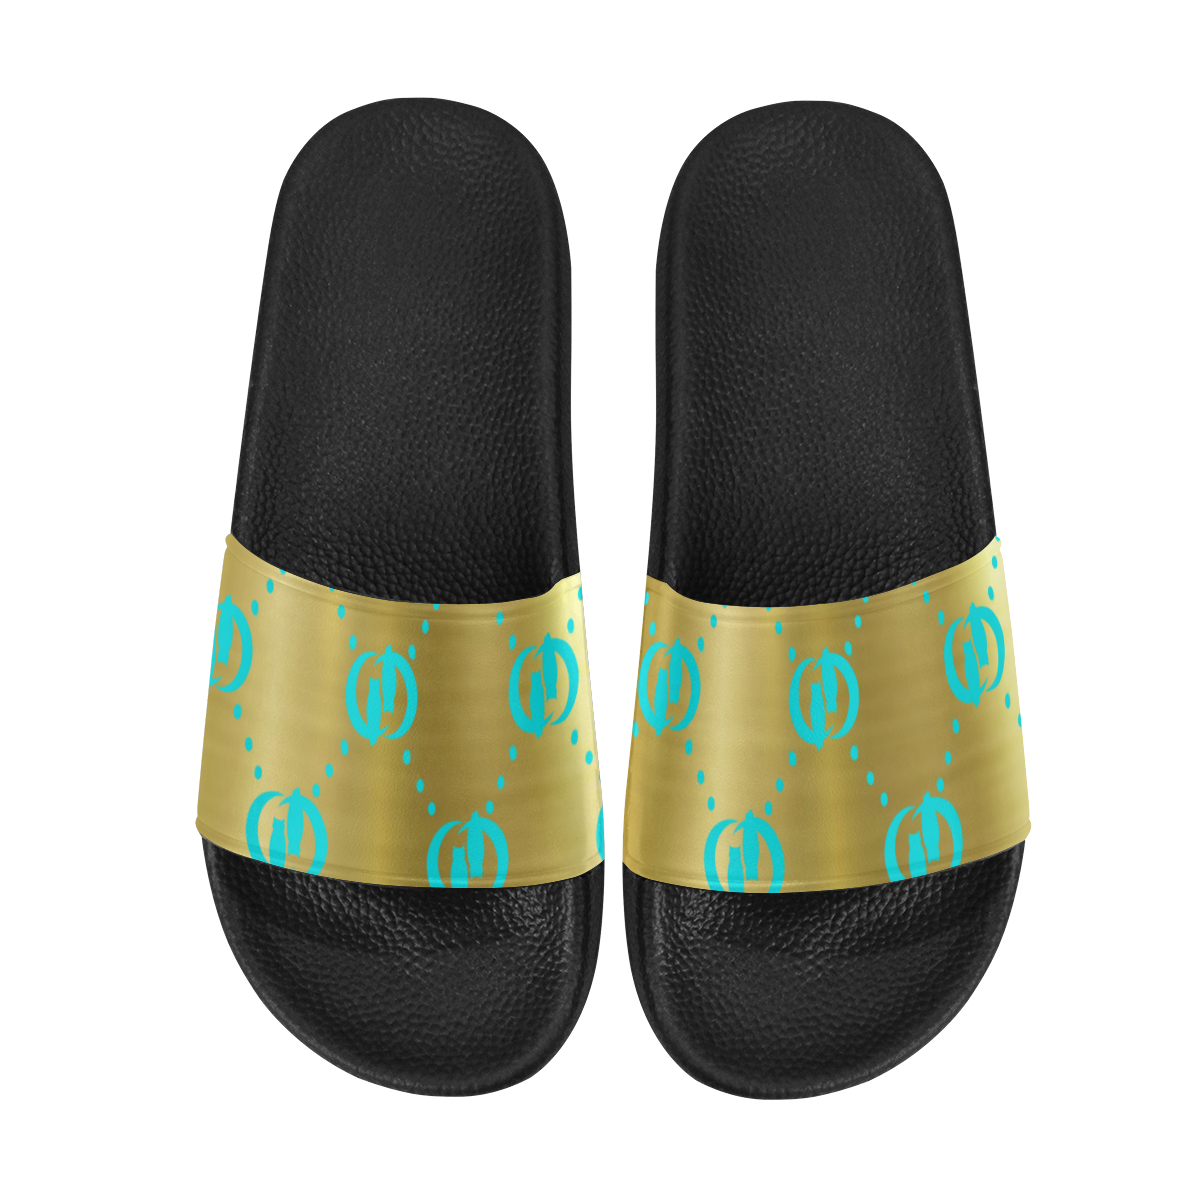 OG LCC GOLD TURQUOISE Women's Slide Sandals (Model 057)